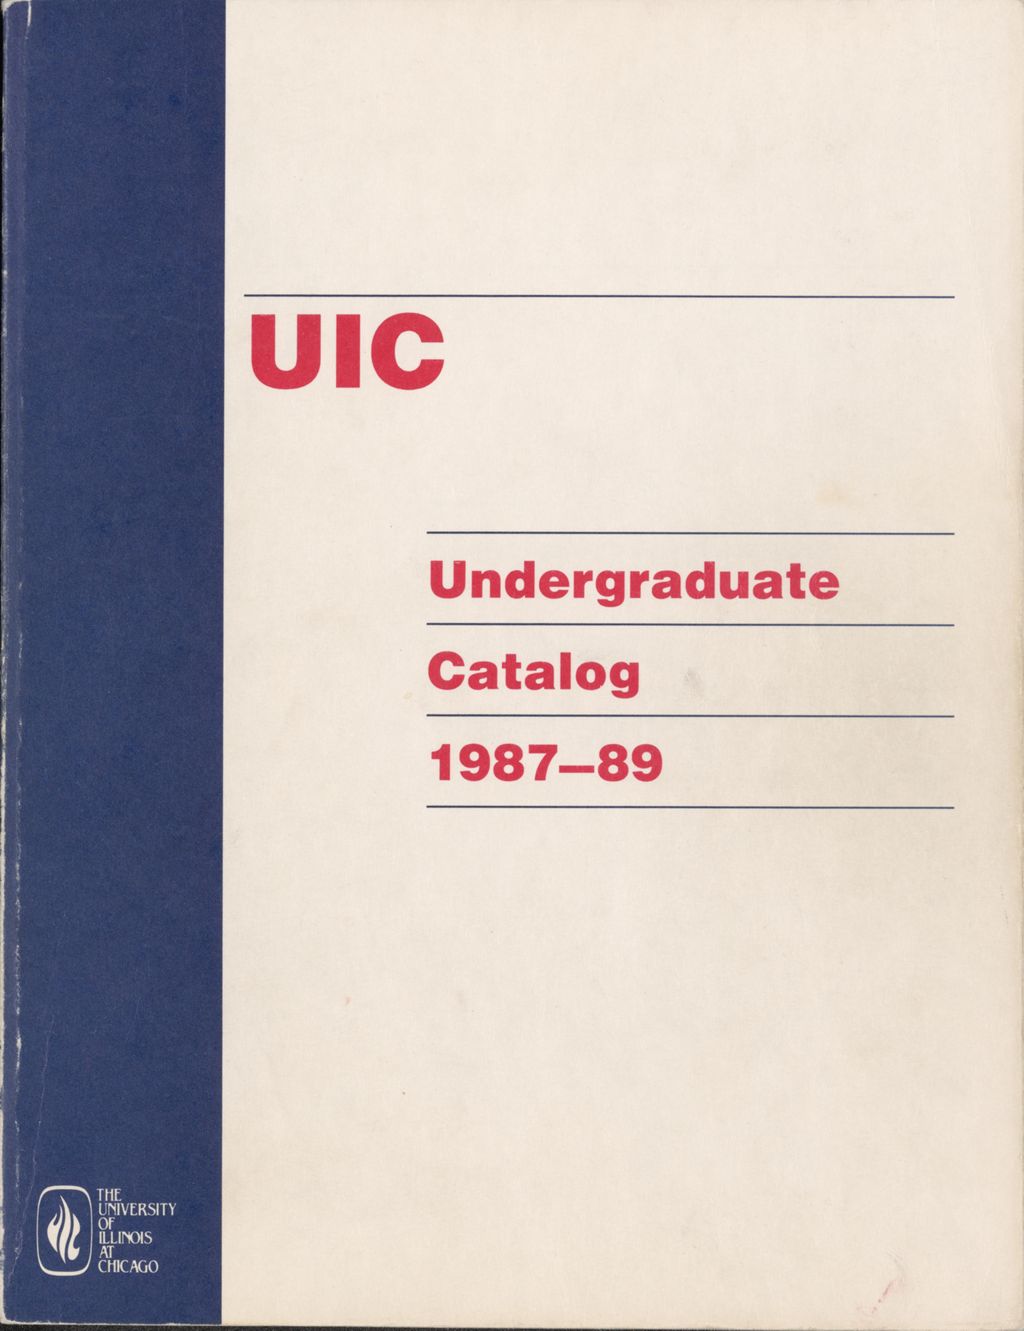 Miniature of Undergraduate Catalog, 1987-1989